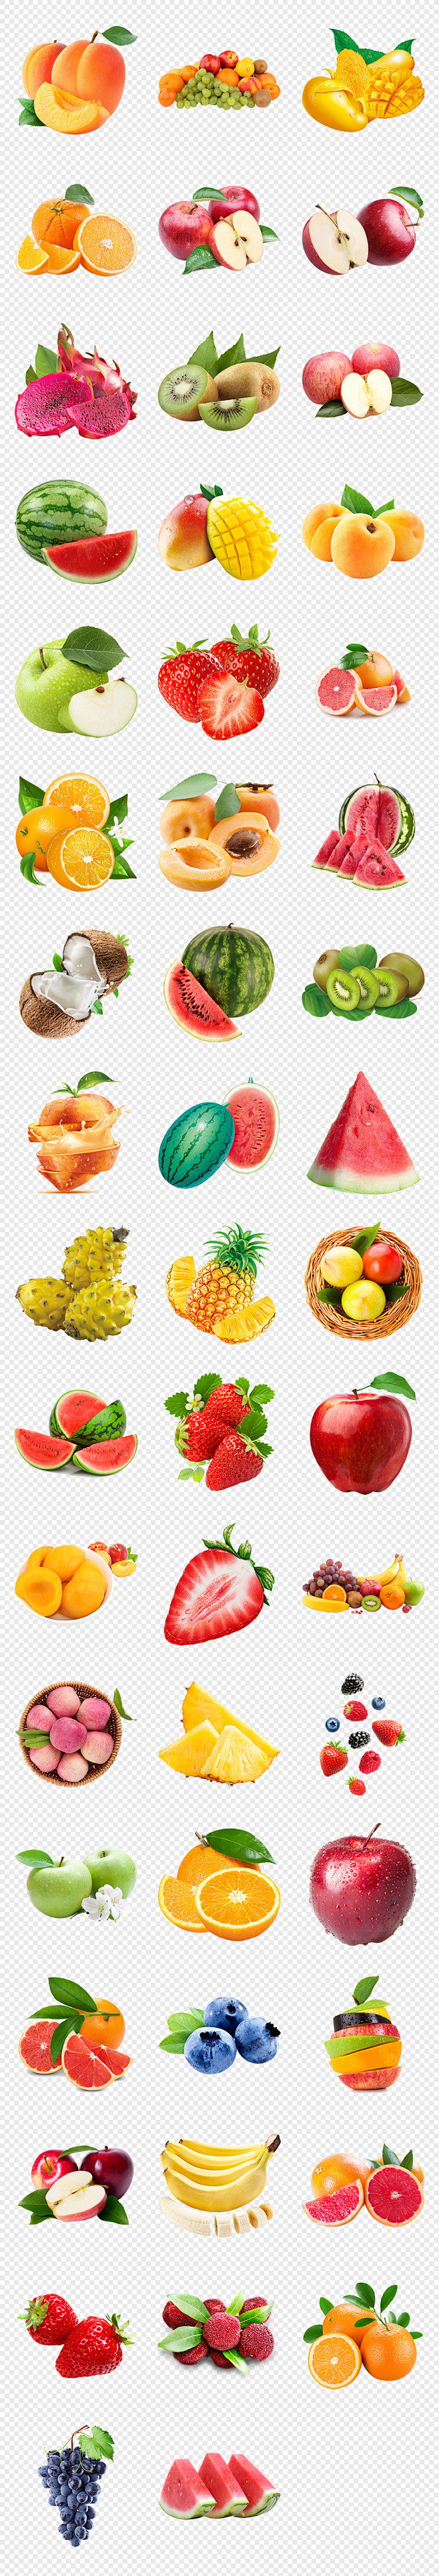 多种水果素材水果集合水果海报素材背景PN...